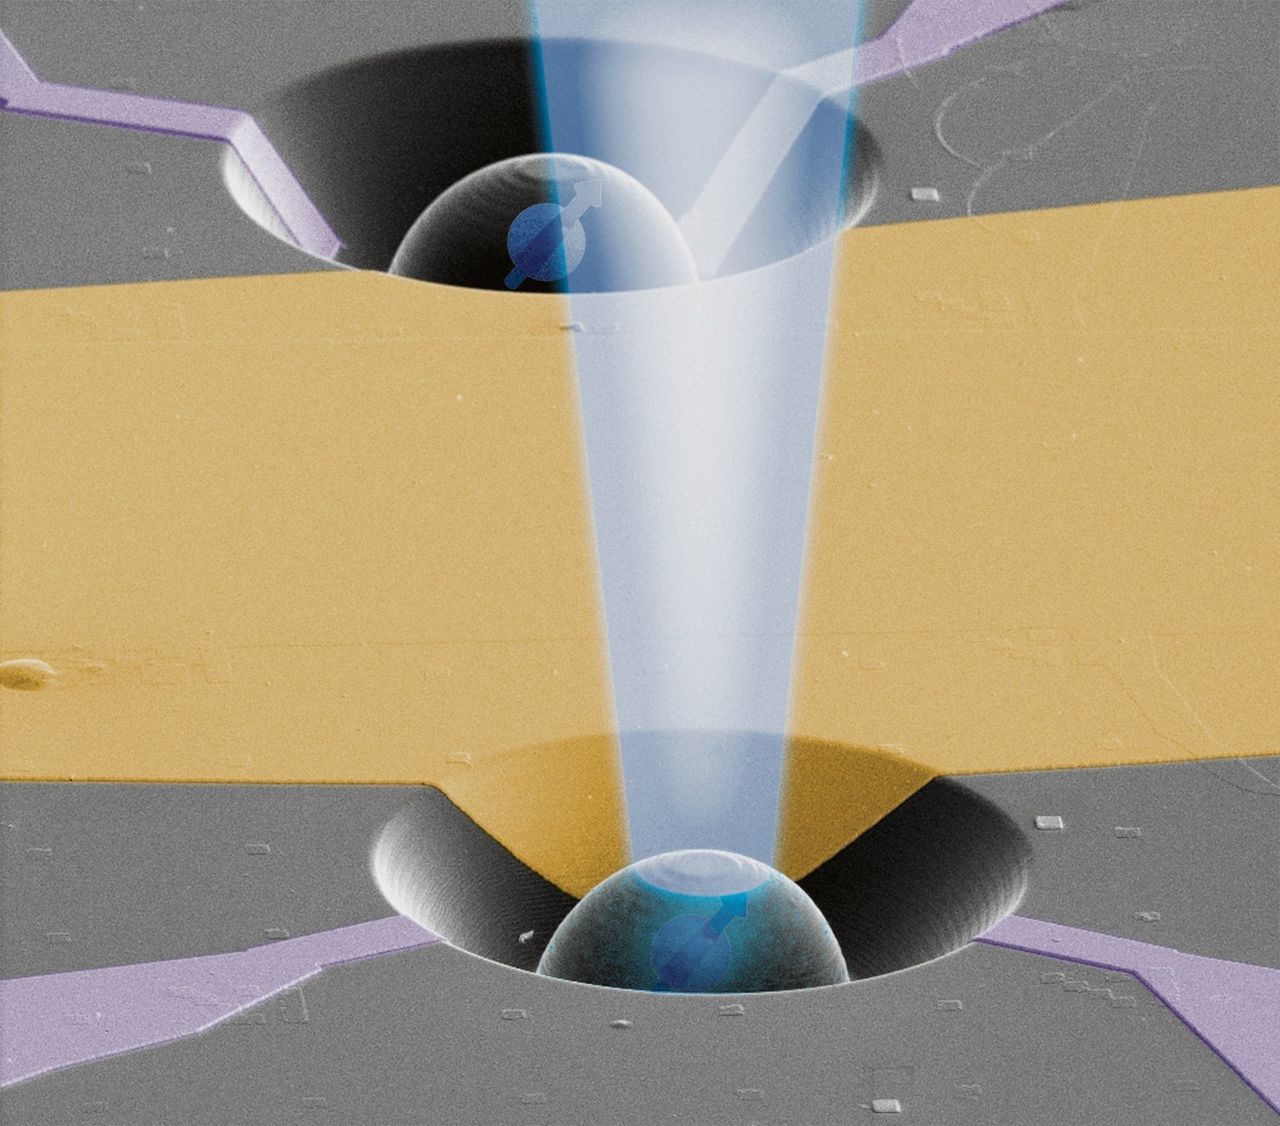 Elektronenmicroscoopafbeelding van diamant met uitgesneden lensje rondom qubit, met fictieve laserstraal. In werkelijkheid is de opstelling 0,04 millimeter breed.